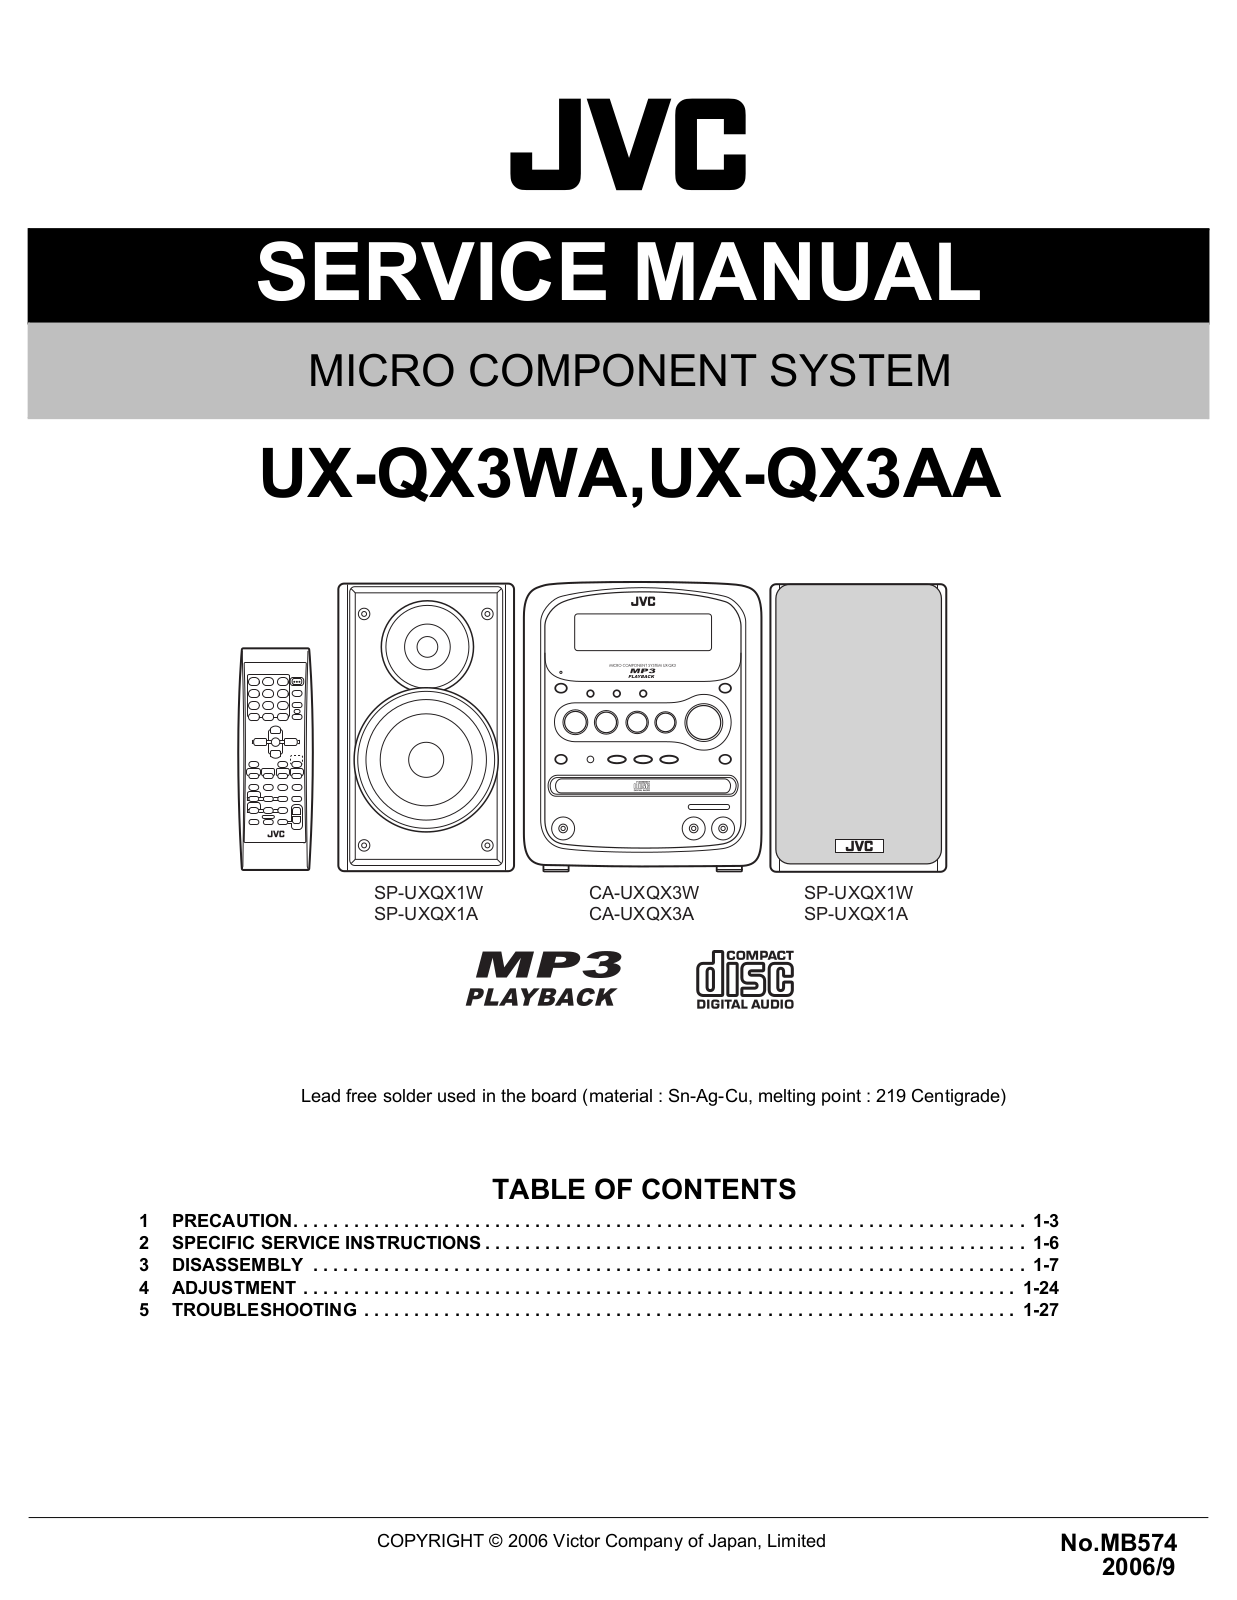 Jvc UX-QX3-WA, UX-QX3-AA Service Manual